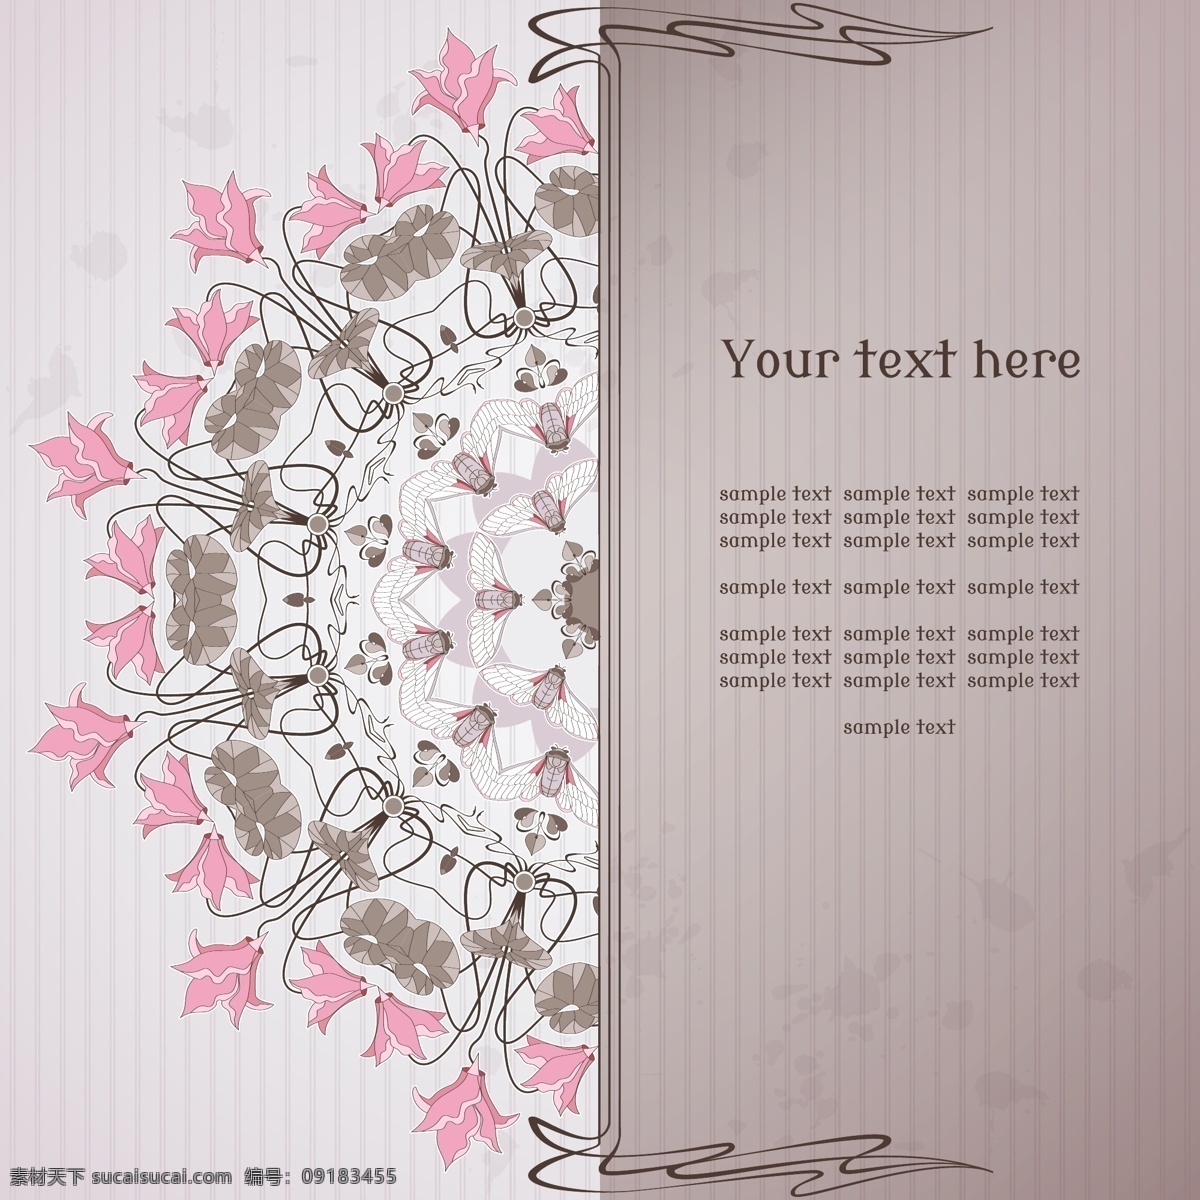 信纸 条纹 粉 灰色 花纹 vi 卡片 矢量 圆形 花边 粉色 花朵 欧式 创意 简约 贺卡 邀请函